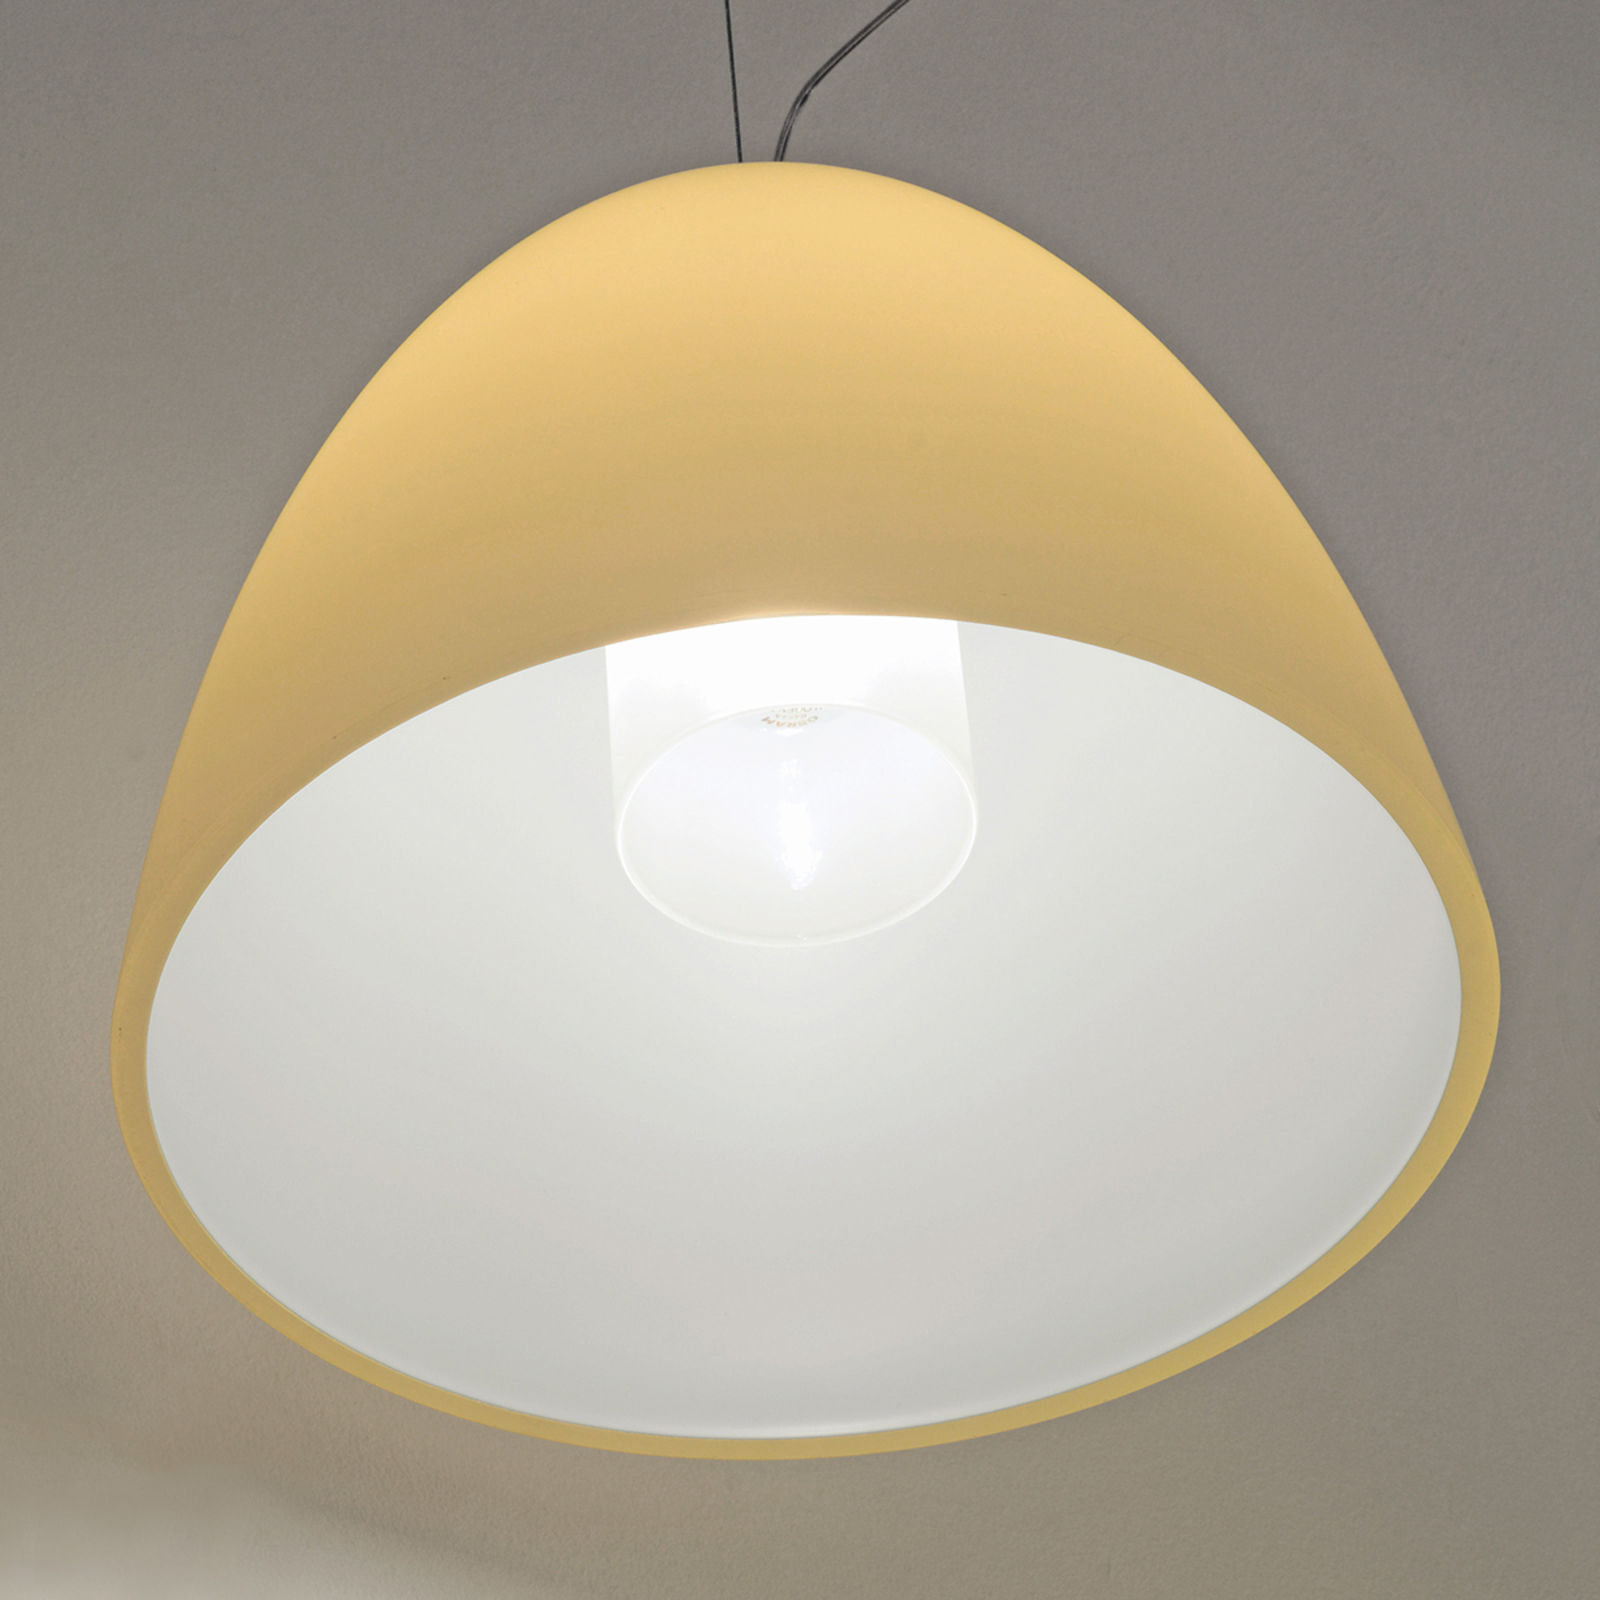 BELL - sandfarvet hængelampe med 1 lys, 30 cm